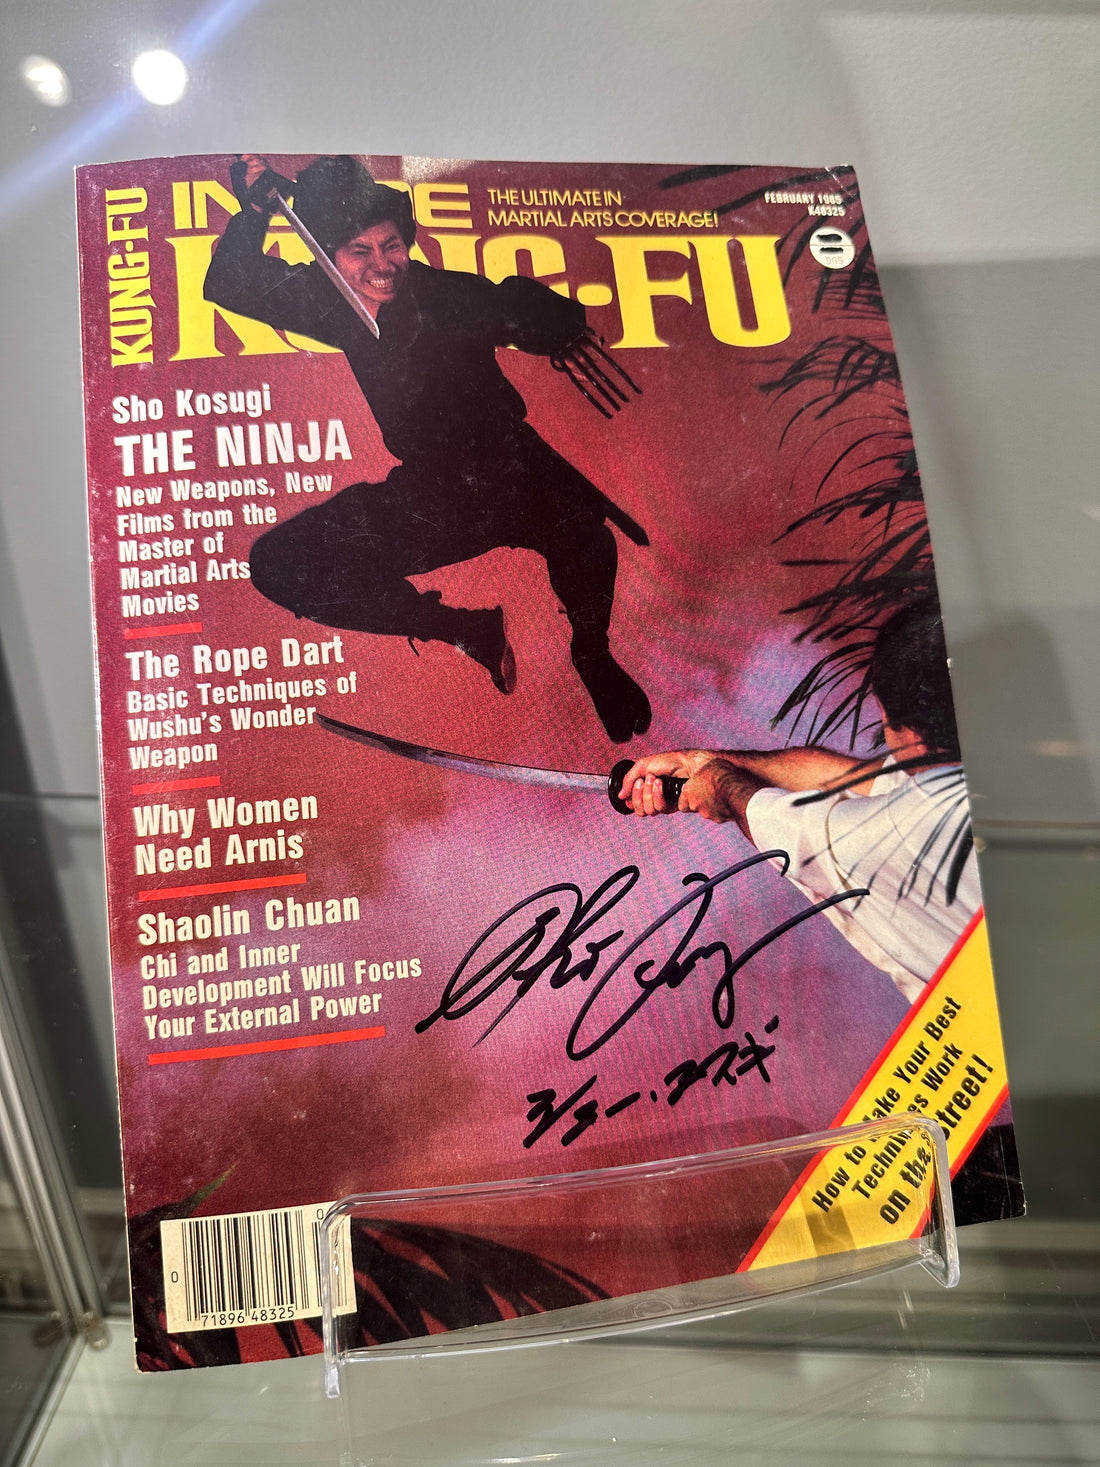 Sho Kosugi Autographed "INSIDE KUNG FU" February 1985 VG